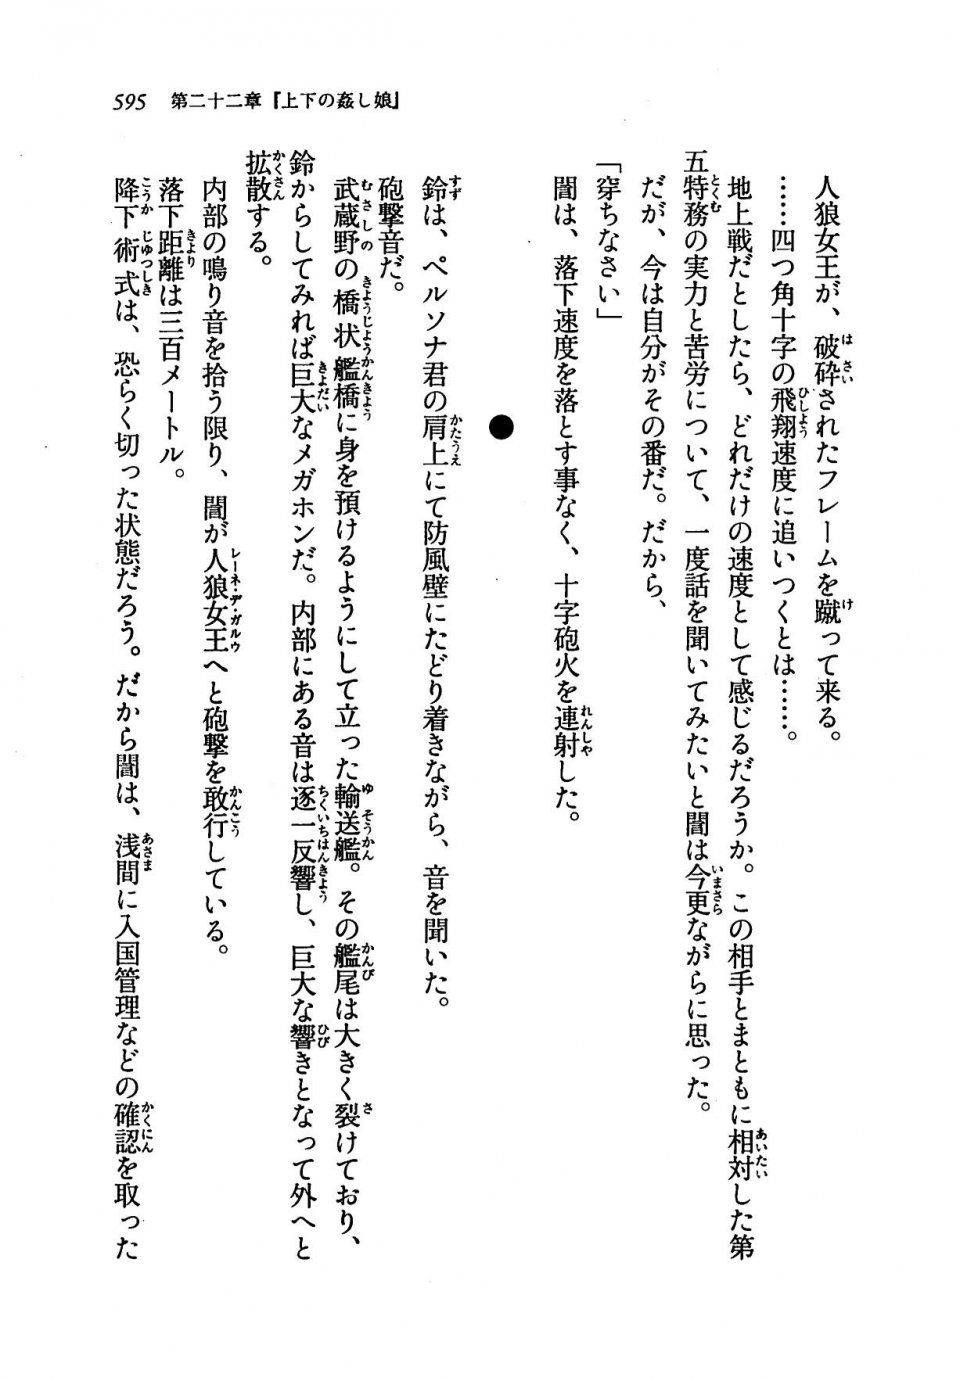 Kyoukai Senjou no Horizon LN Vol 19(8A) - Photo #595